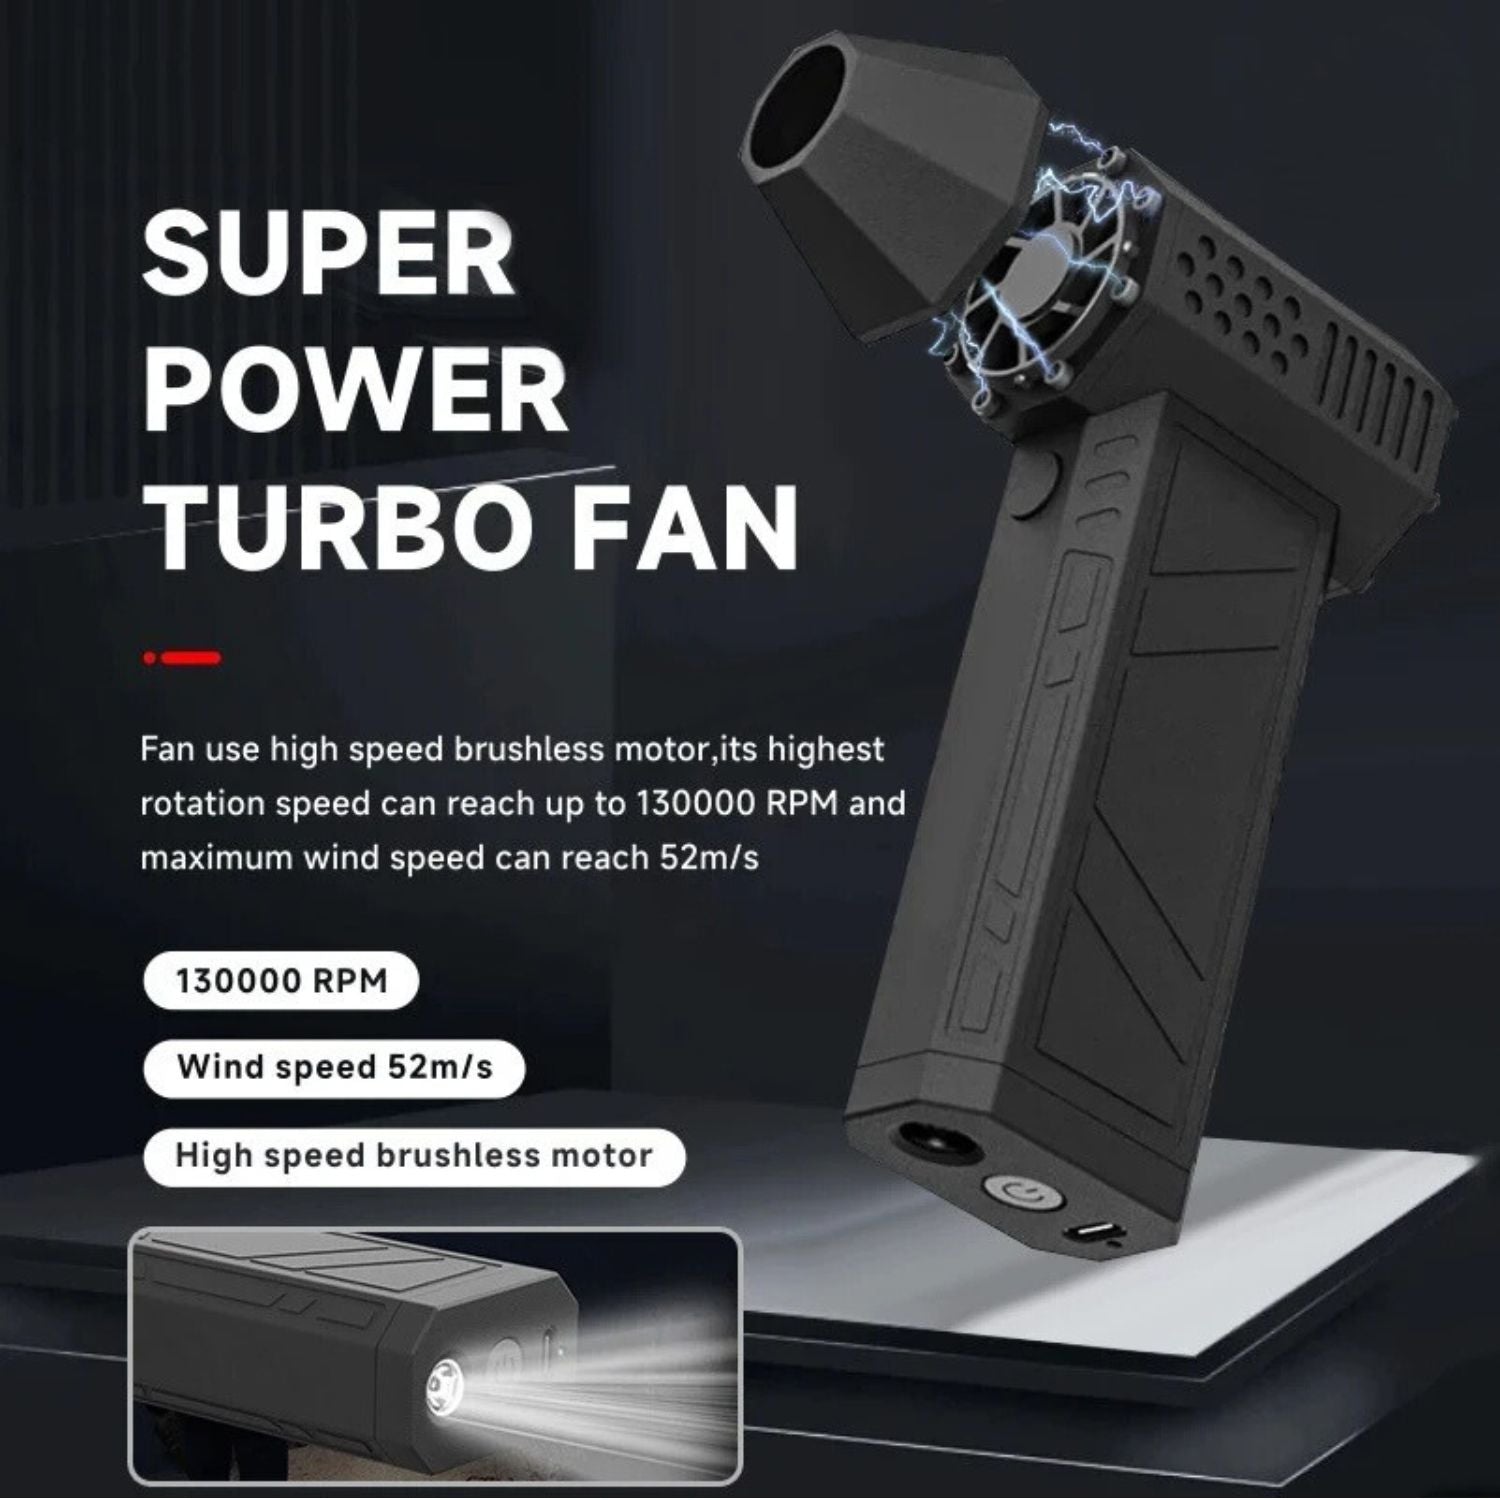 Super Power Turbo Fan